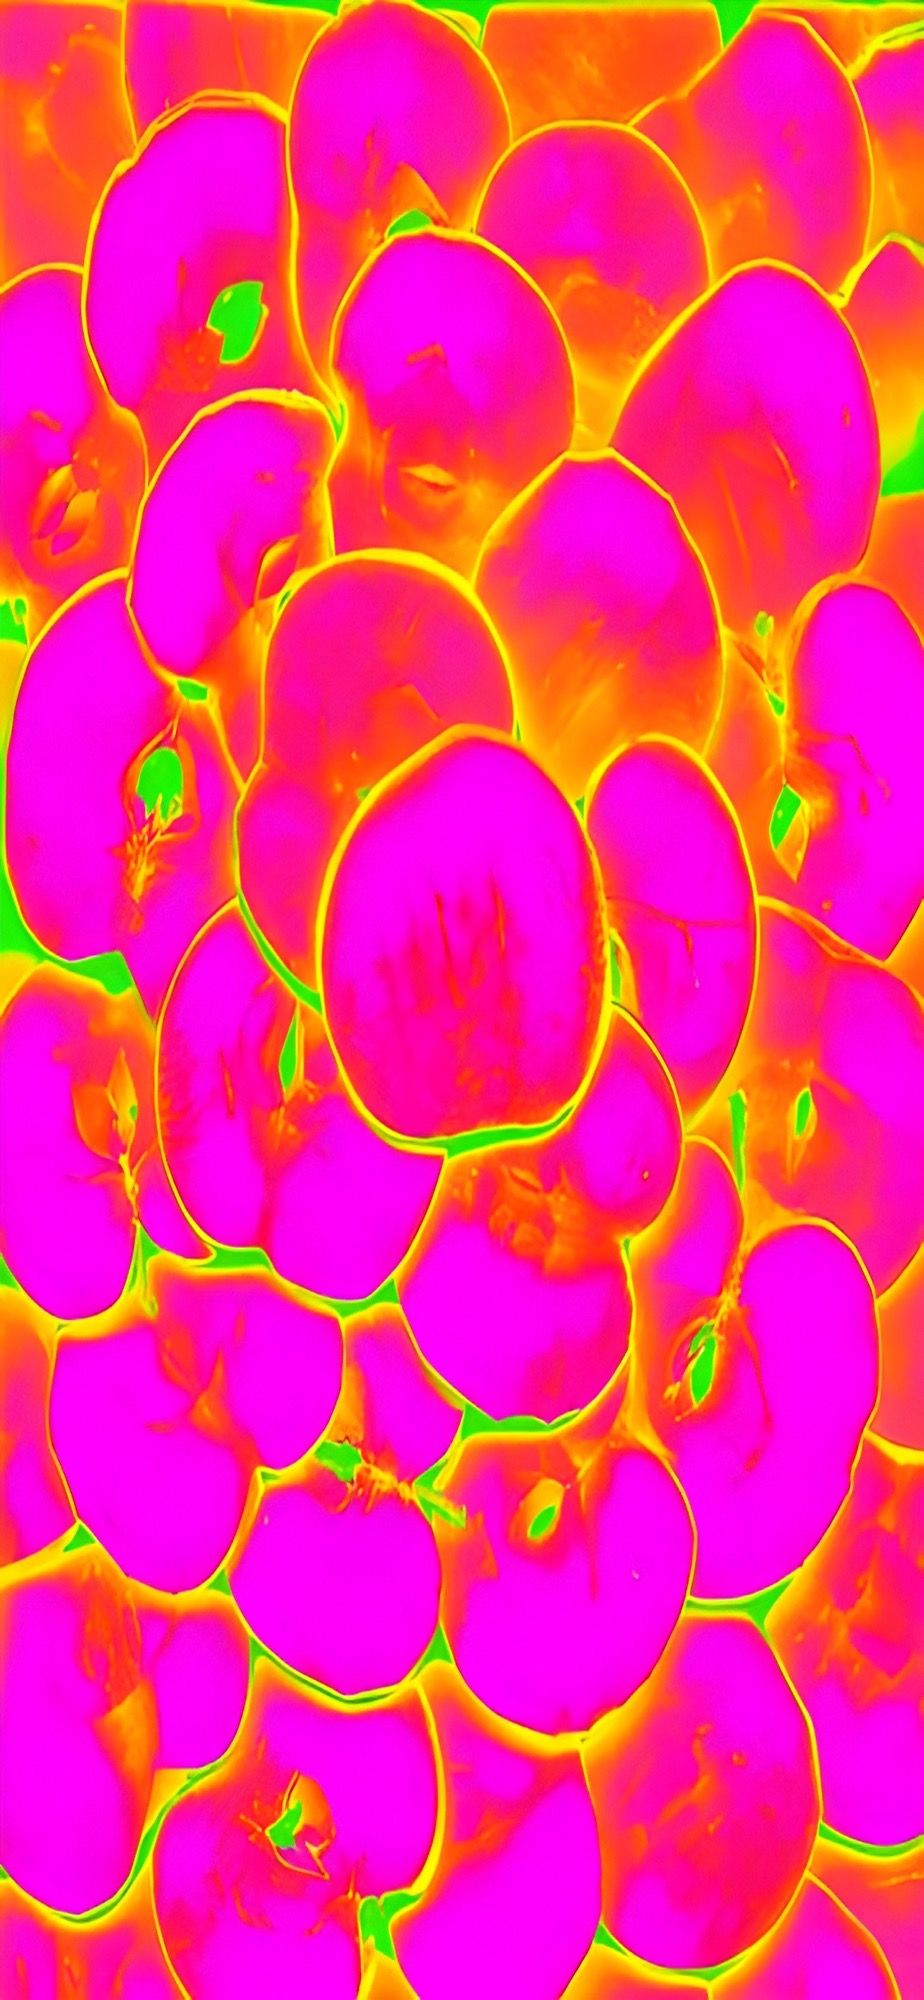  Psychedelisch Hintergrundbild 924x2000. Psychedelic Acid Like Aesthetic Wallpaper